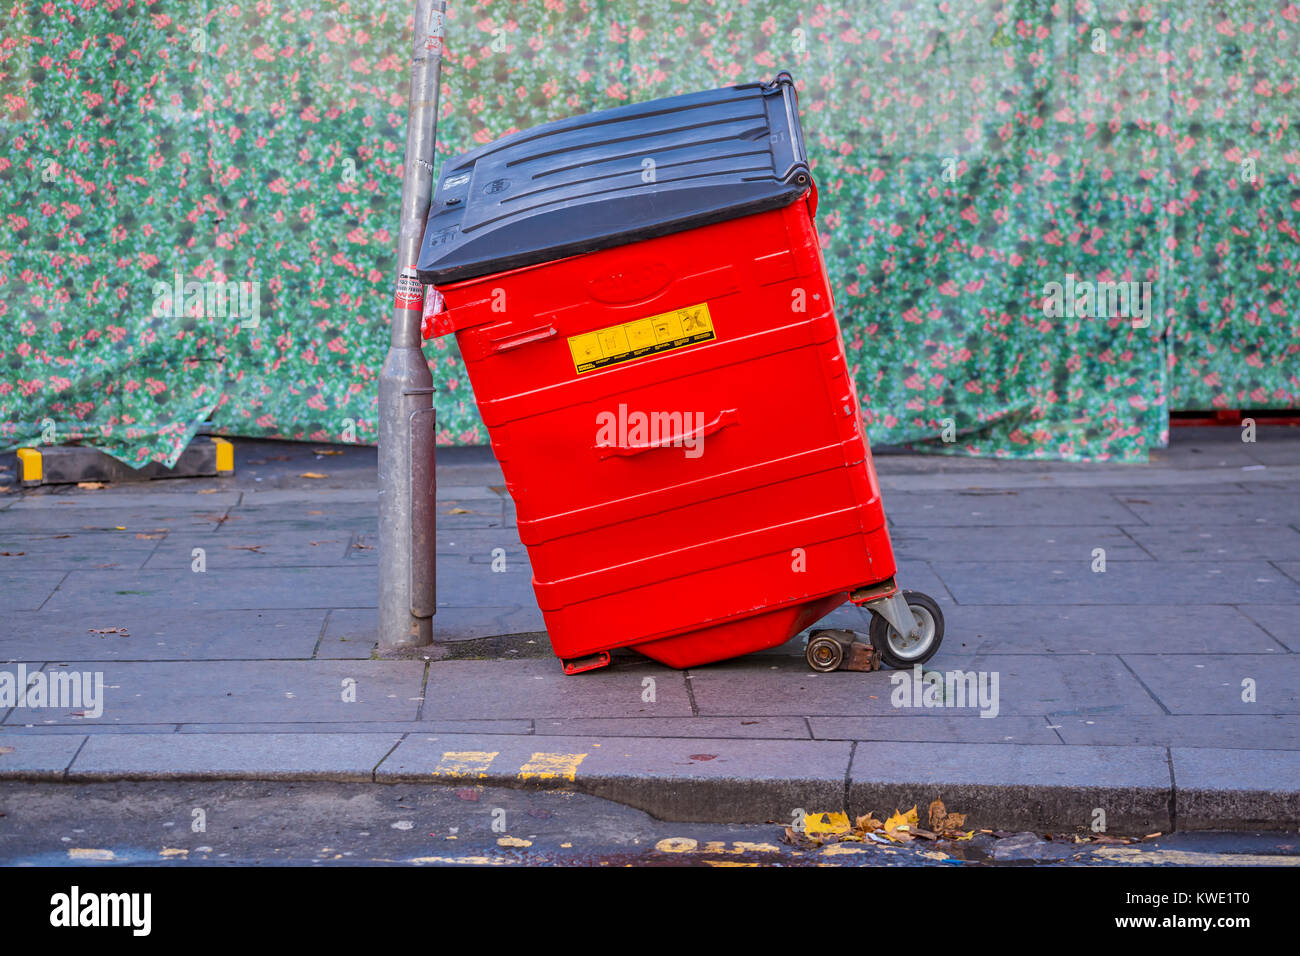 Cubo de basura roto apoyado por un semáforo en una calle de la ciudad, Reino Unido Foto de stock